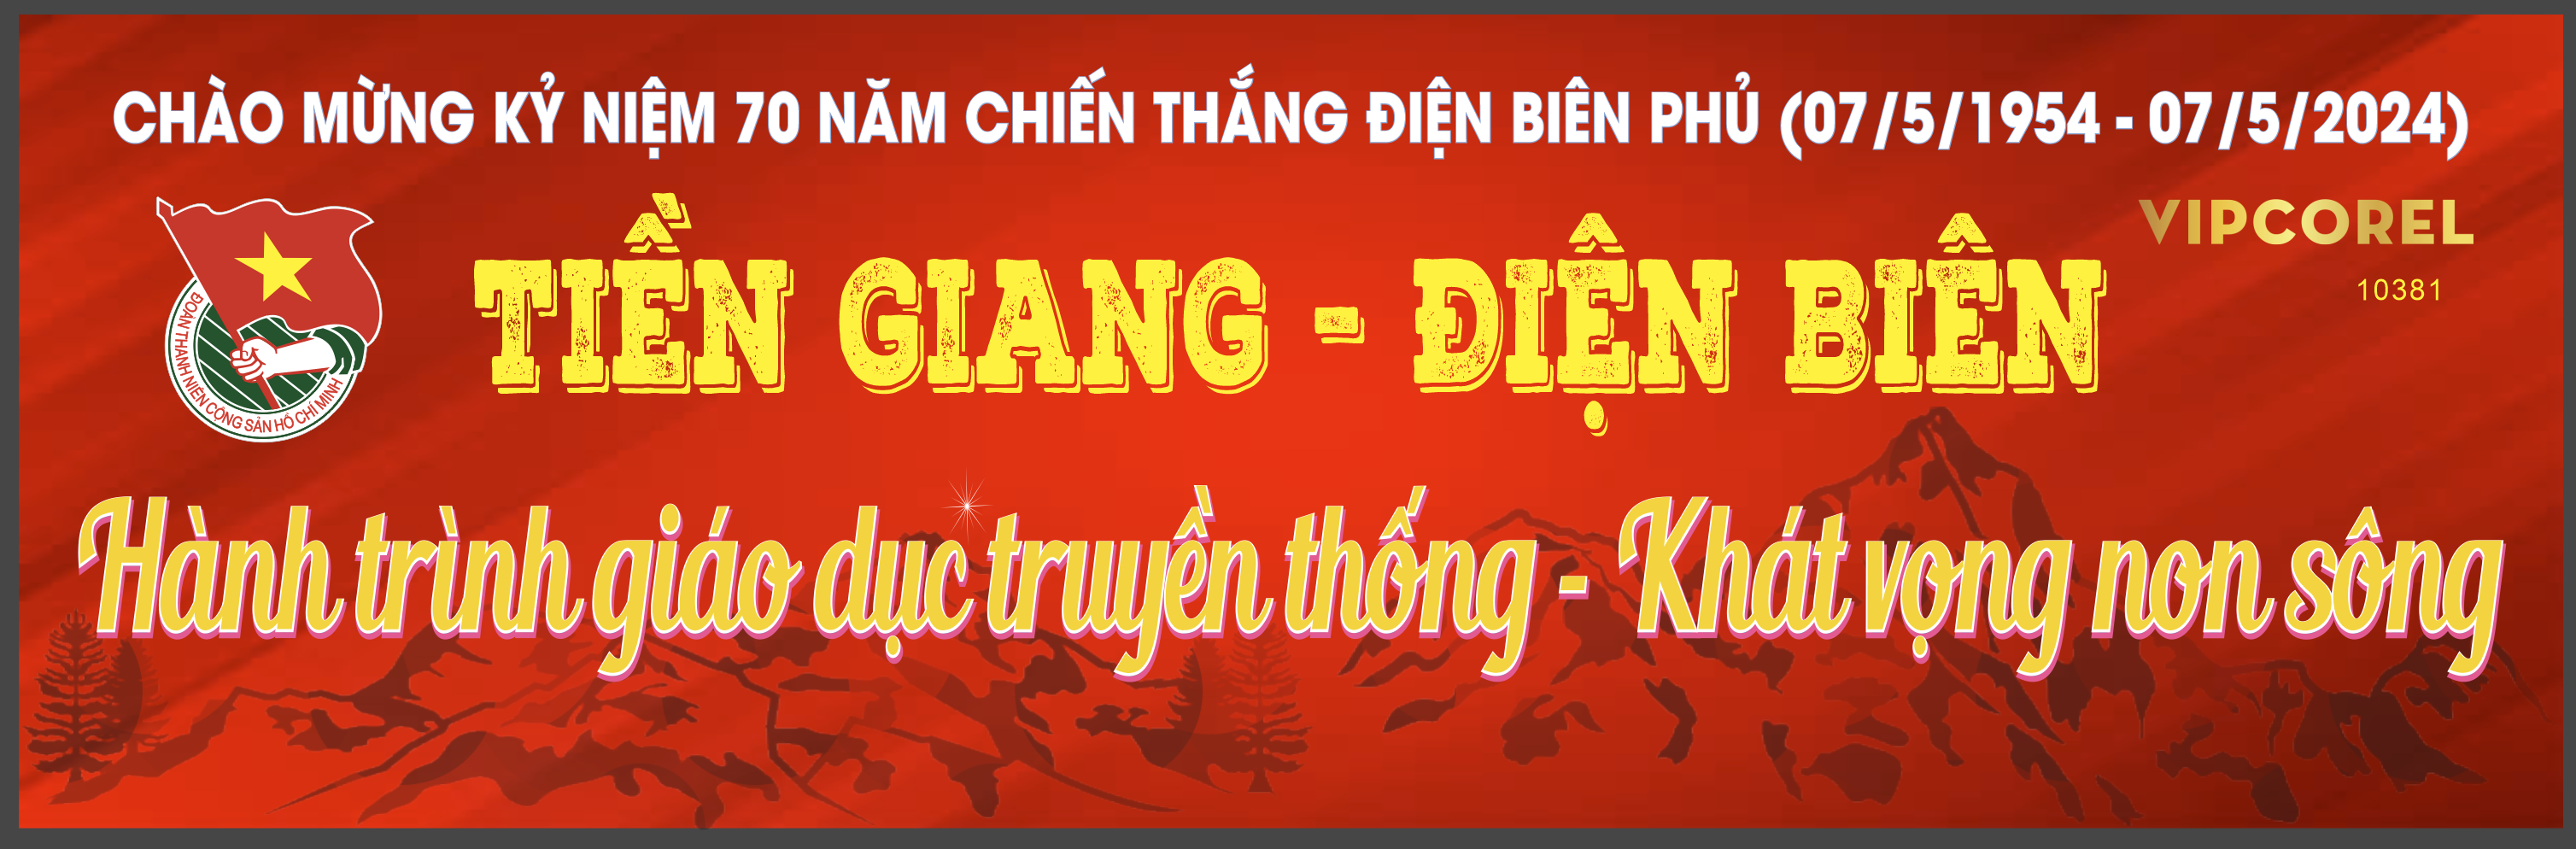 market ky niem chien thang dien bien phu.png